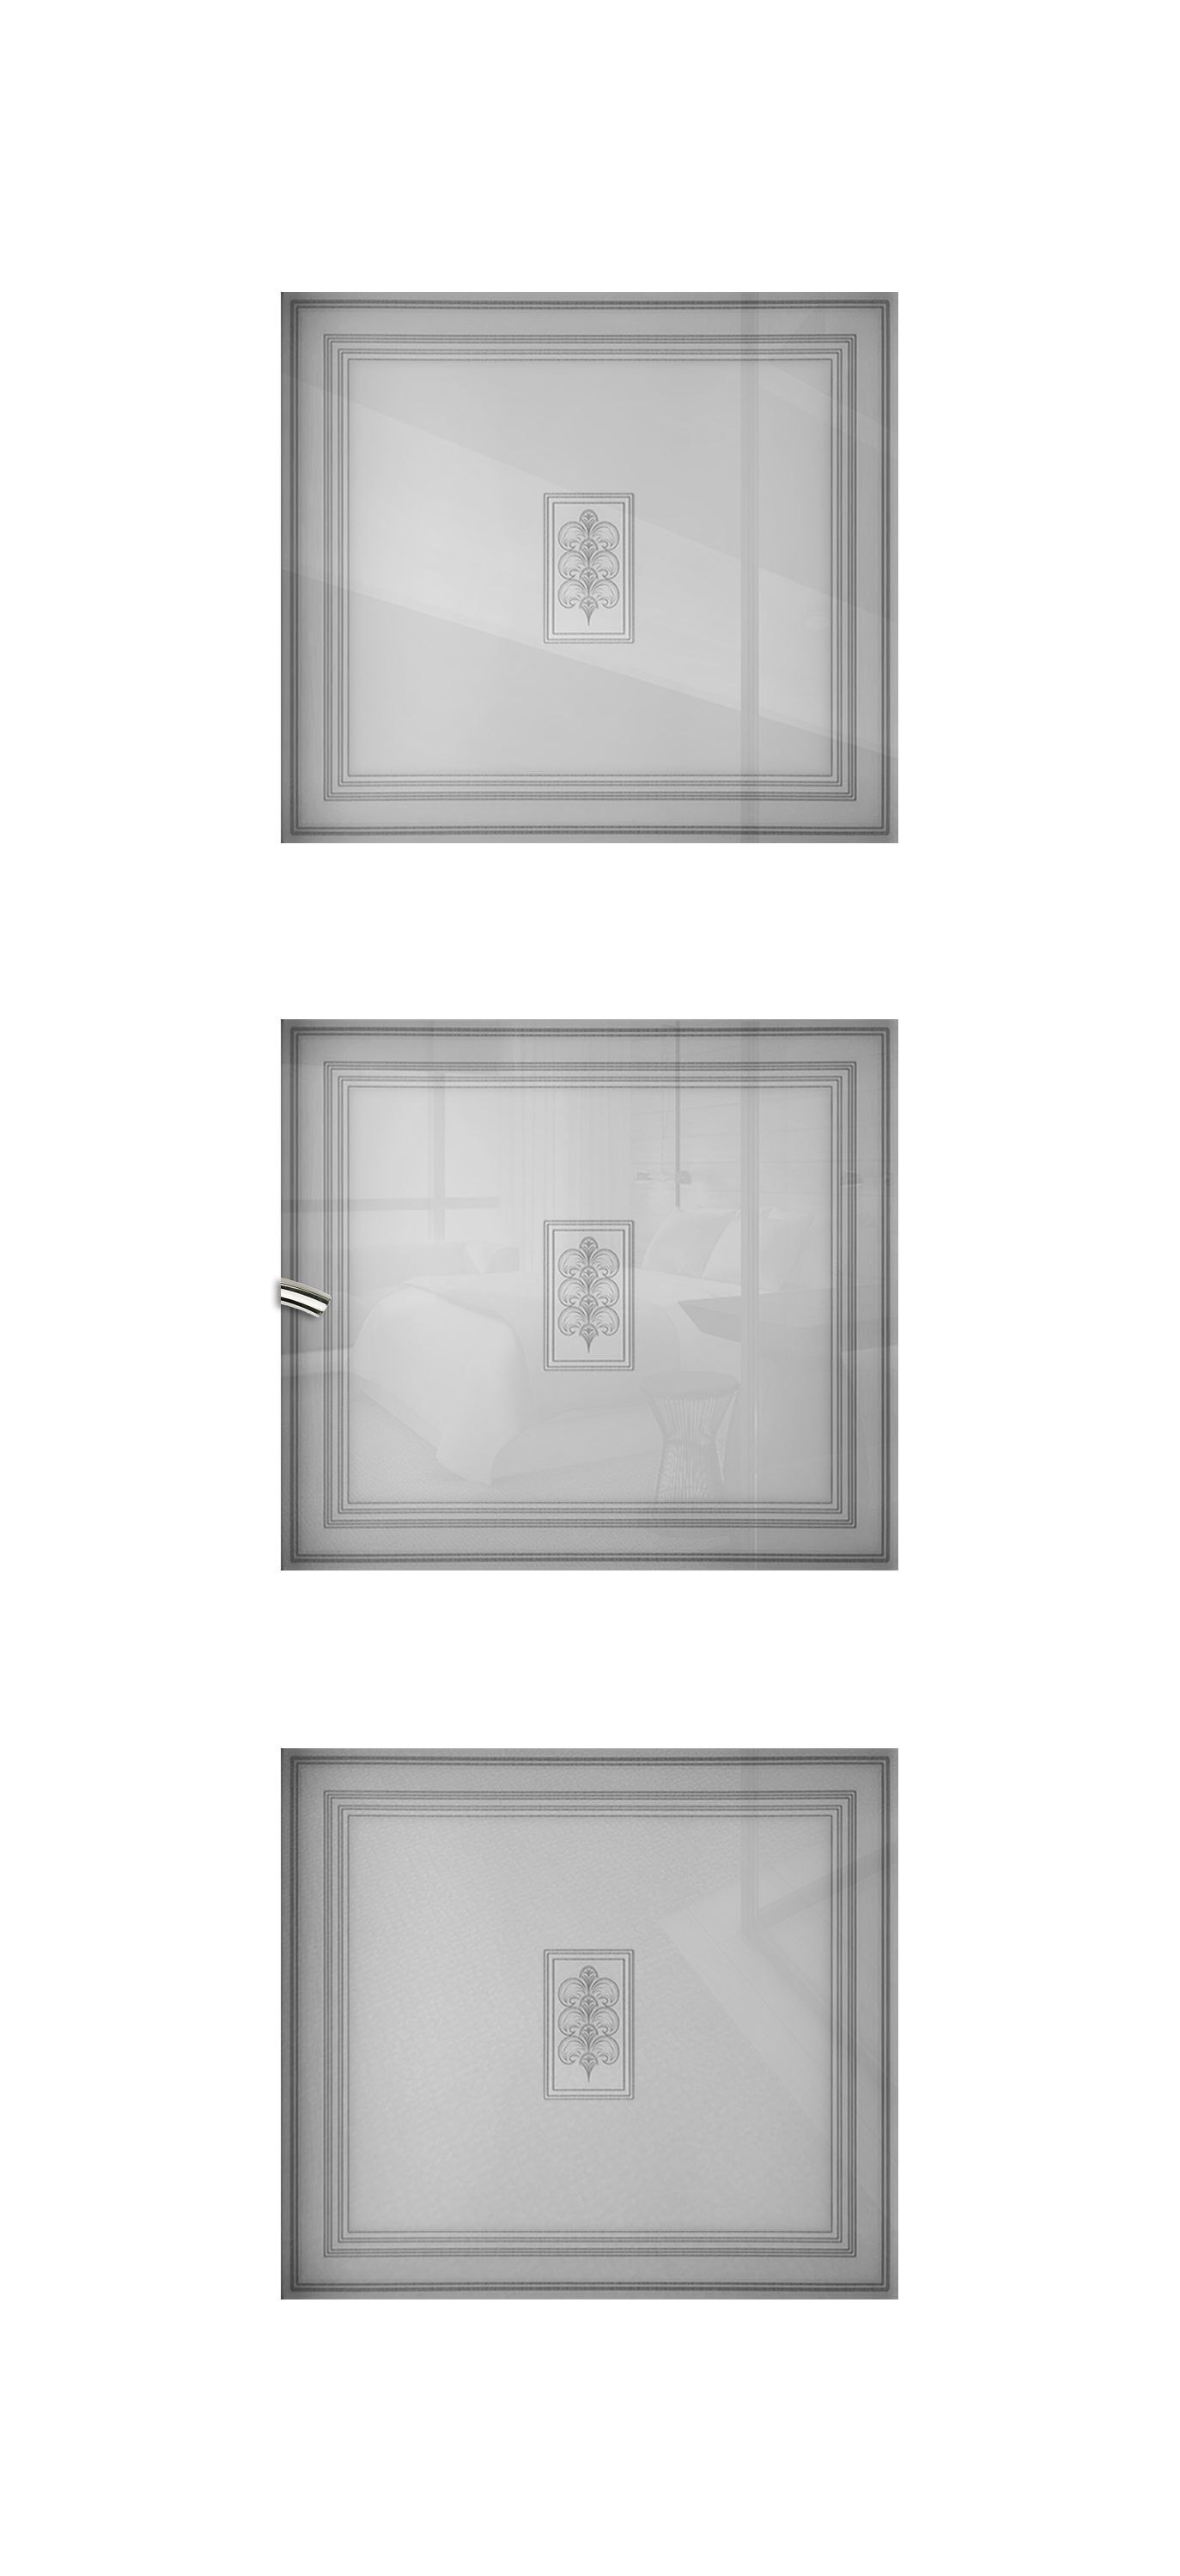 Межкомнатная дверь «Vision 3». Вид отделки Белая эмаль Остекление:  Cтандартный наличник